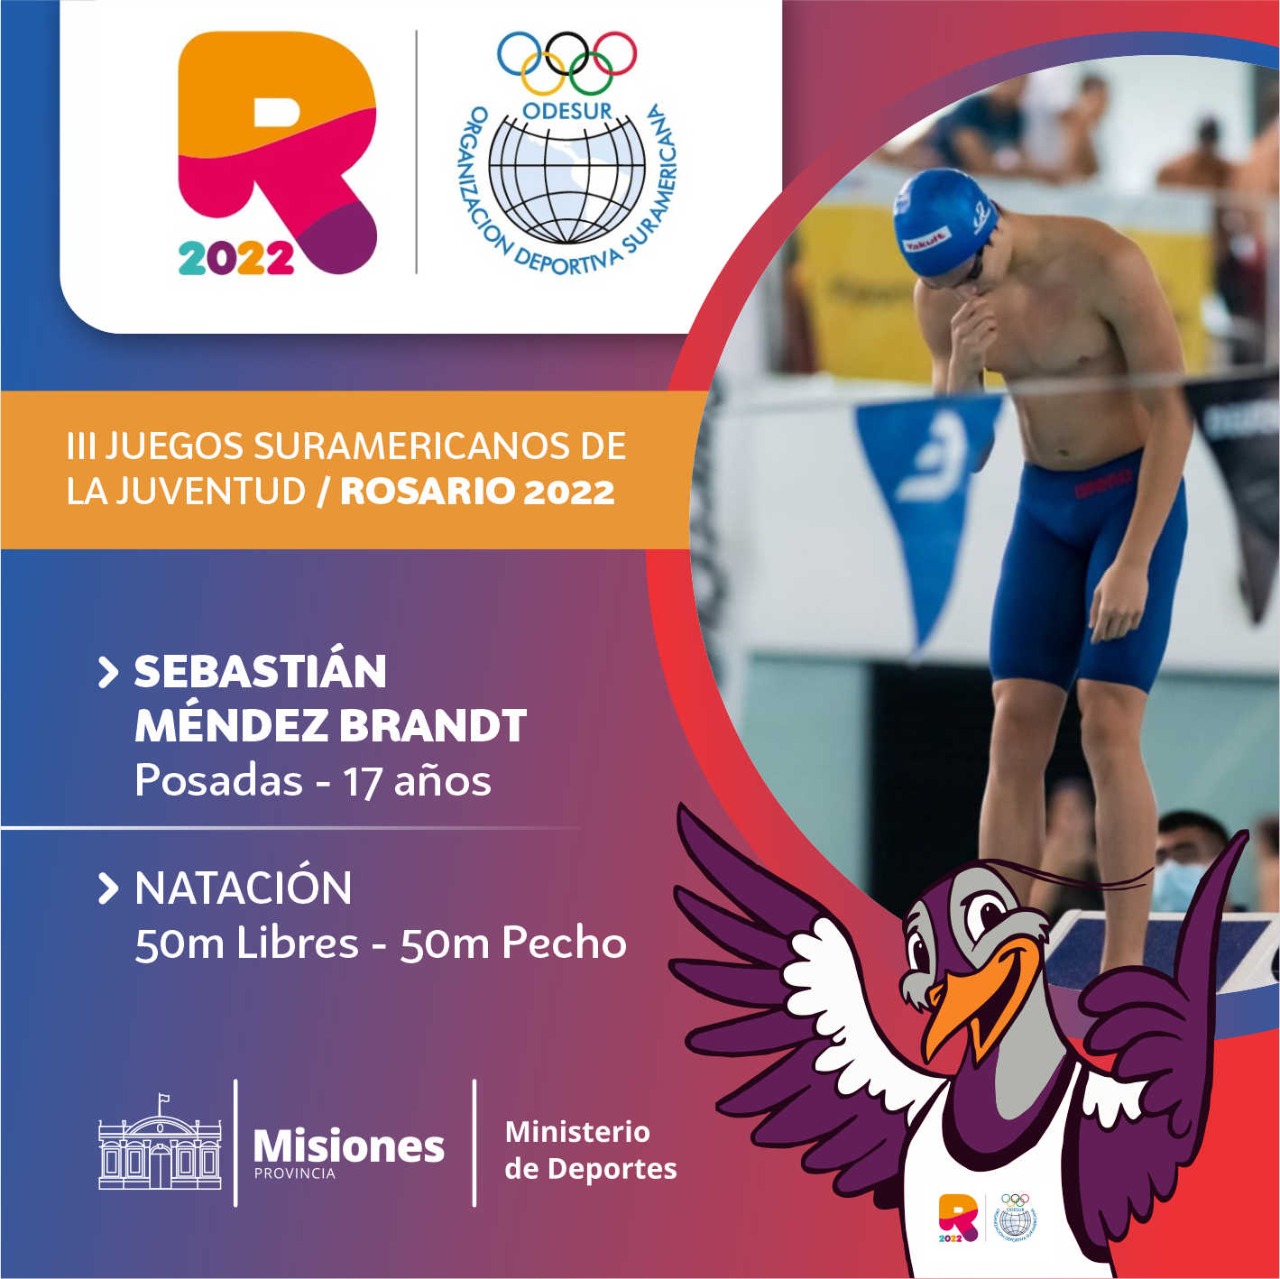 Juegos Suramericanos de la Juventud